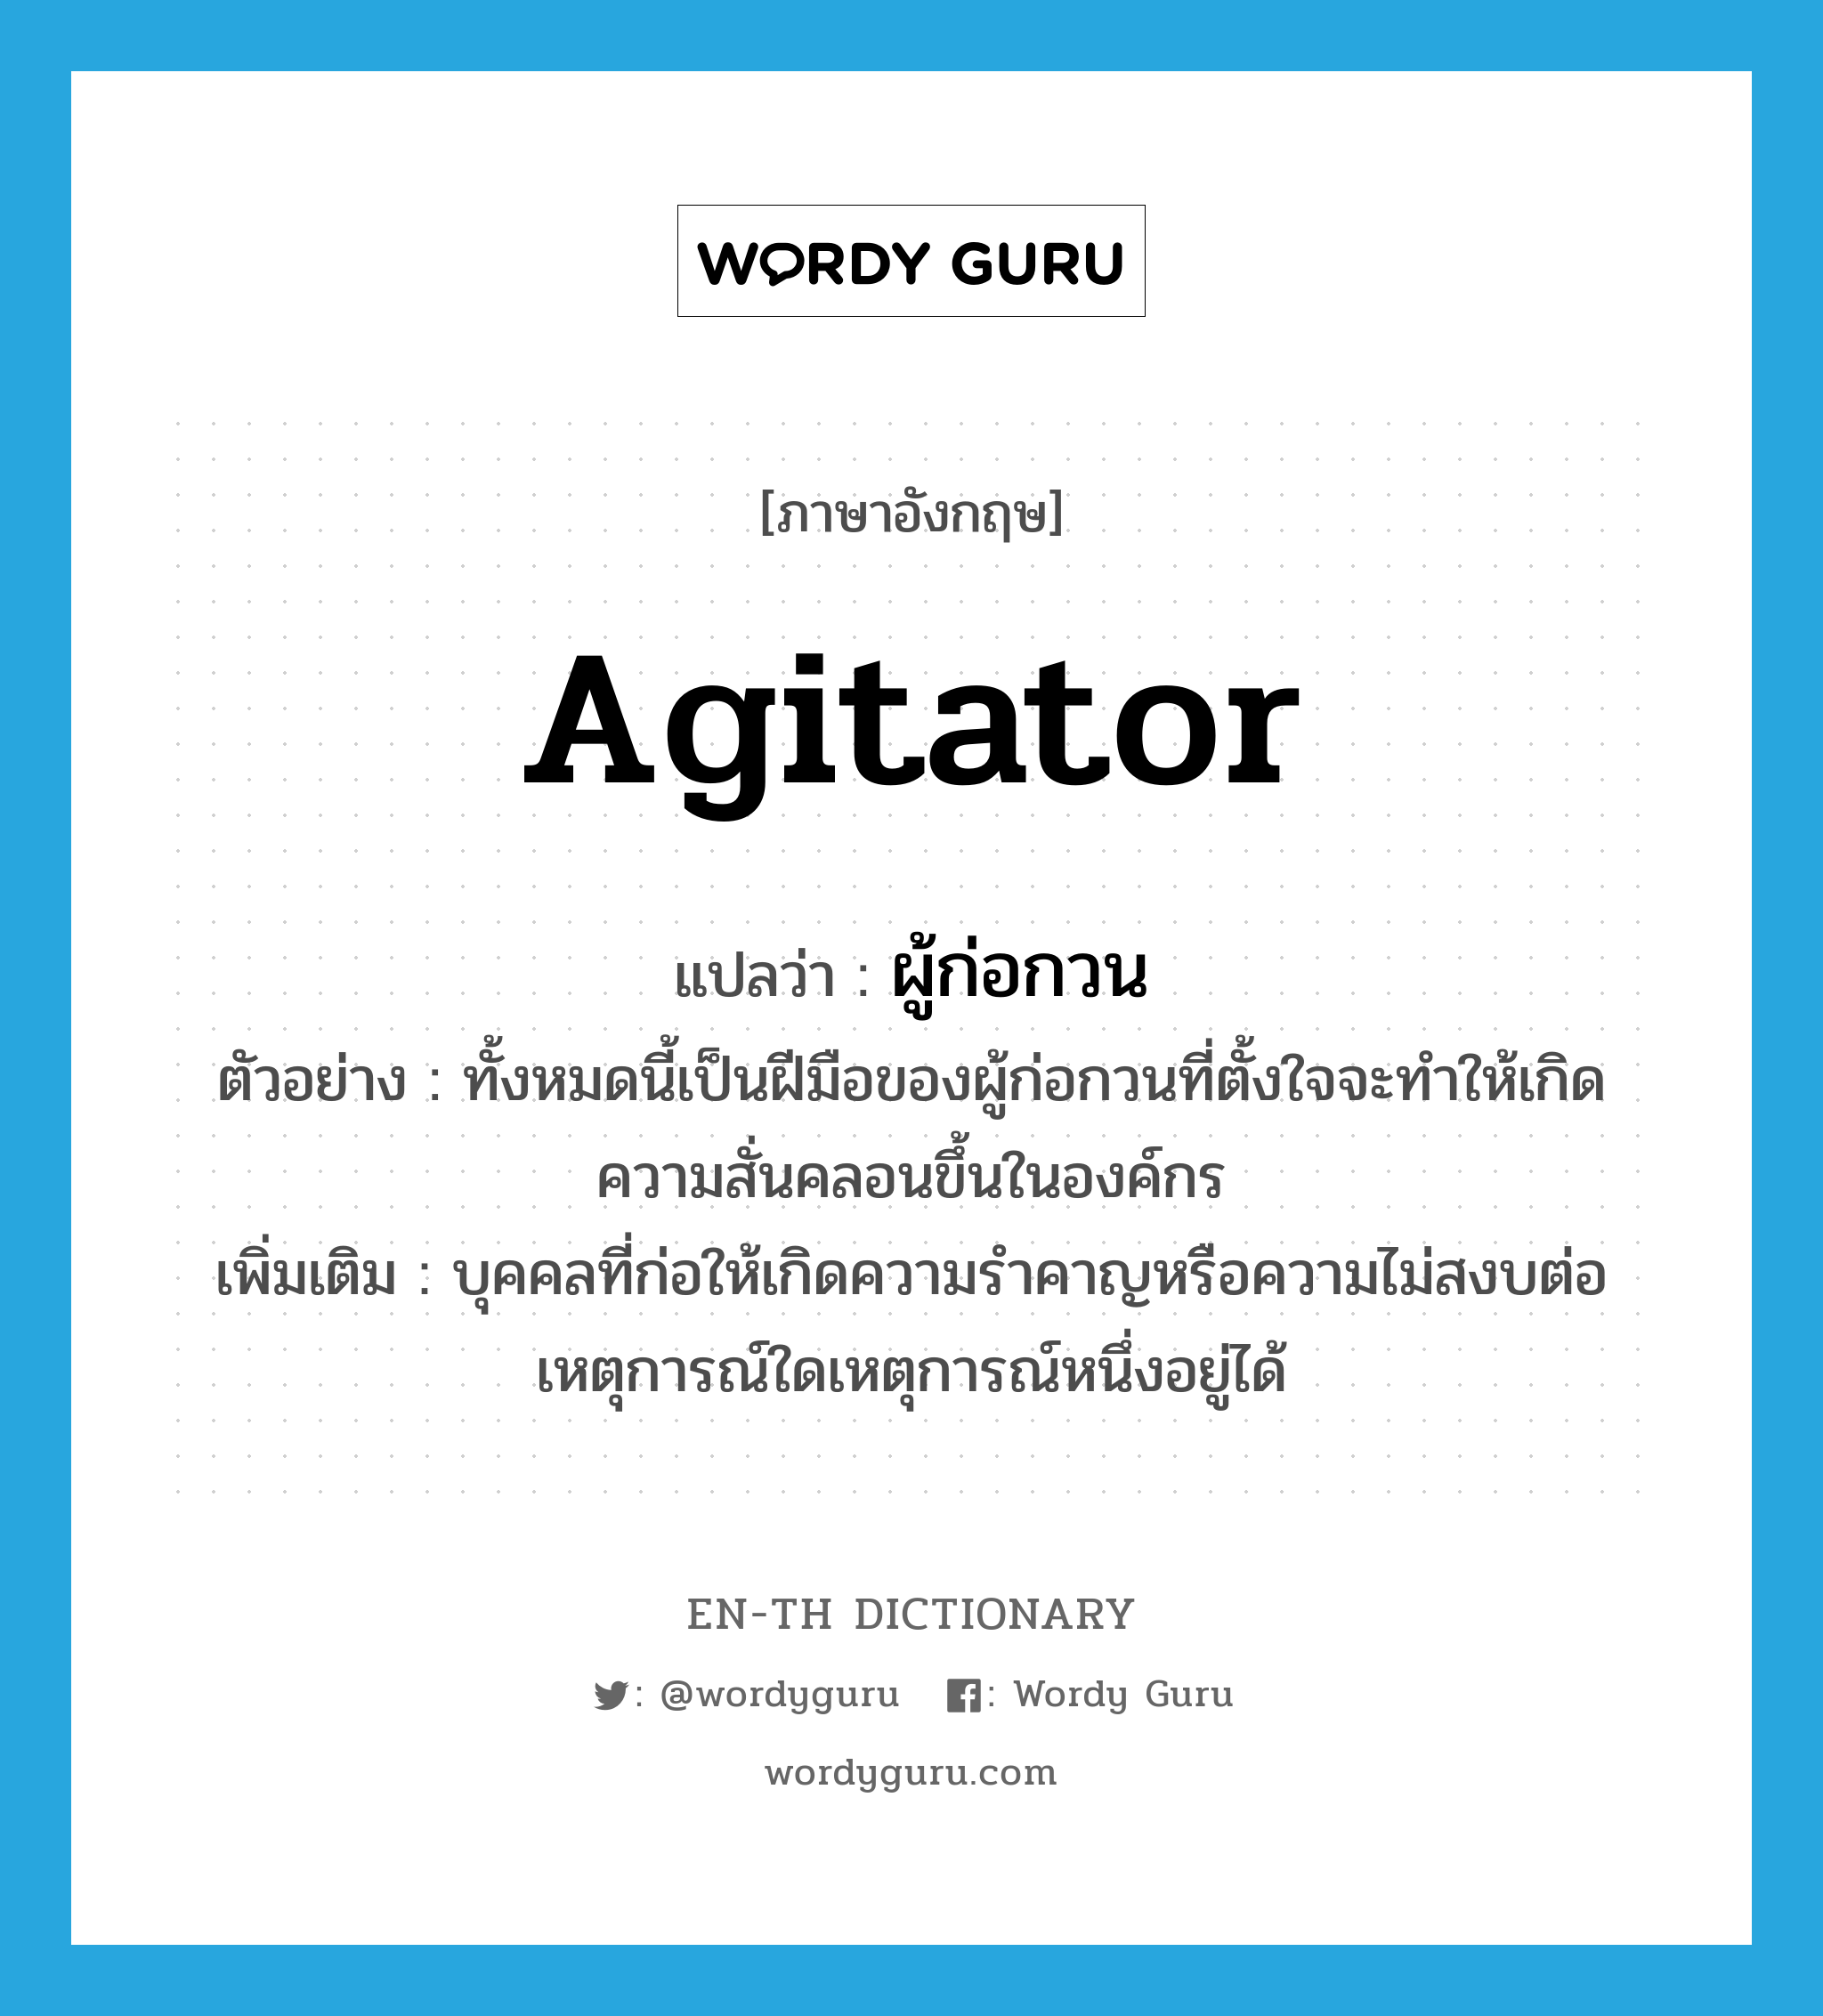 agitator แปลว่า?, คำศัพท์ภาษาอังกฤษ agitator แปลว่า ผู้ก่อกวน ประเภท N ตัวอย่าง ทั้งหมดนี้เป็นฝีมือของผู้ก่อกวนที่ตั้งใจจะทำให้เกิดความสั่นคลอนขึ้นในองค์กร เพิ่มเติม บุคคลที่ก่อให้เกิดความรำคาญหรือความไม่สงบต่อเหตุการณ์ใดเหตุการณ์หนึ่งอยู่ได้ หมวด N